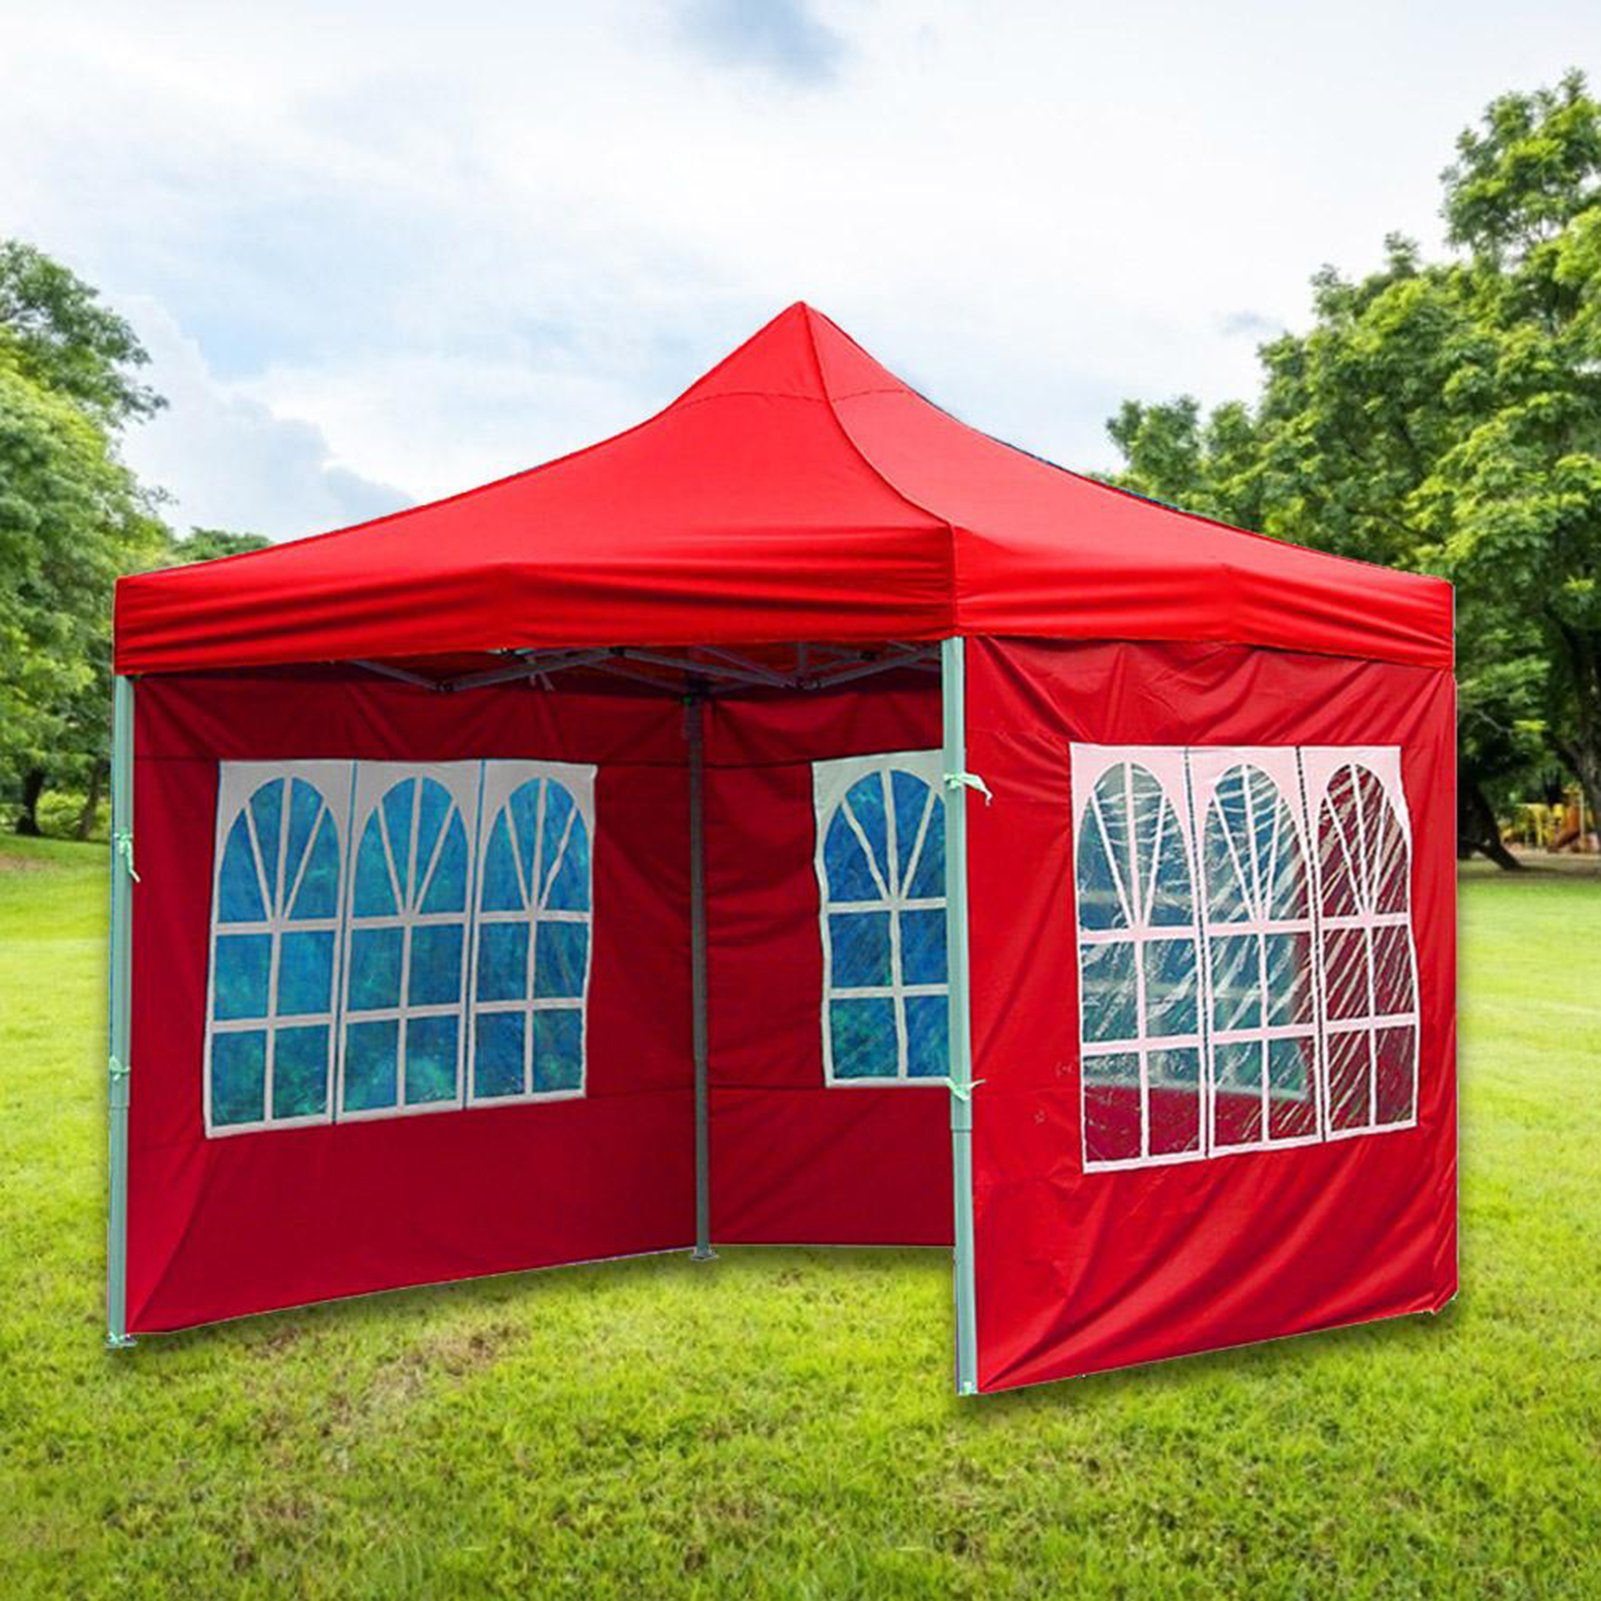 Rutaqian Tarp-Zelt Zelttuch Faltbar Wasserdicht Hat 3 Seiten und transparente Fenster, (Multifunktionaler Camping-Sonnenschutz aus Oxford-Stoff, Wind- und regensicheres Wickeltuch für Außenstallzelte), für Festival, Party, Marktstand, Flohmarkt und Campen rot